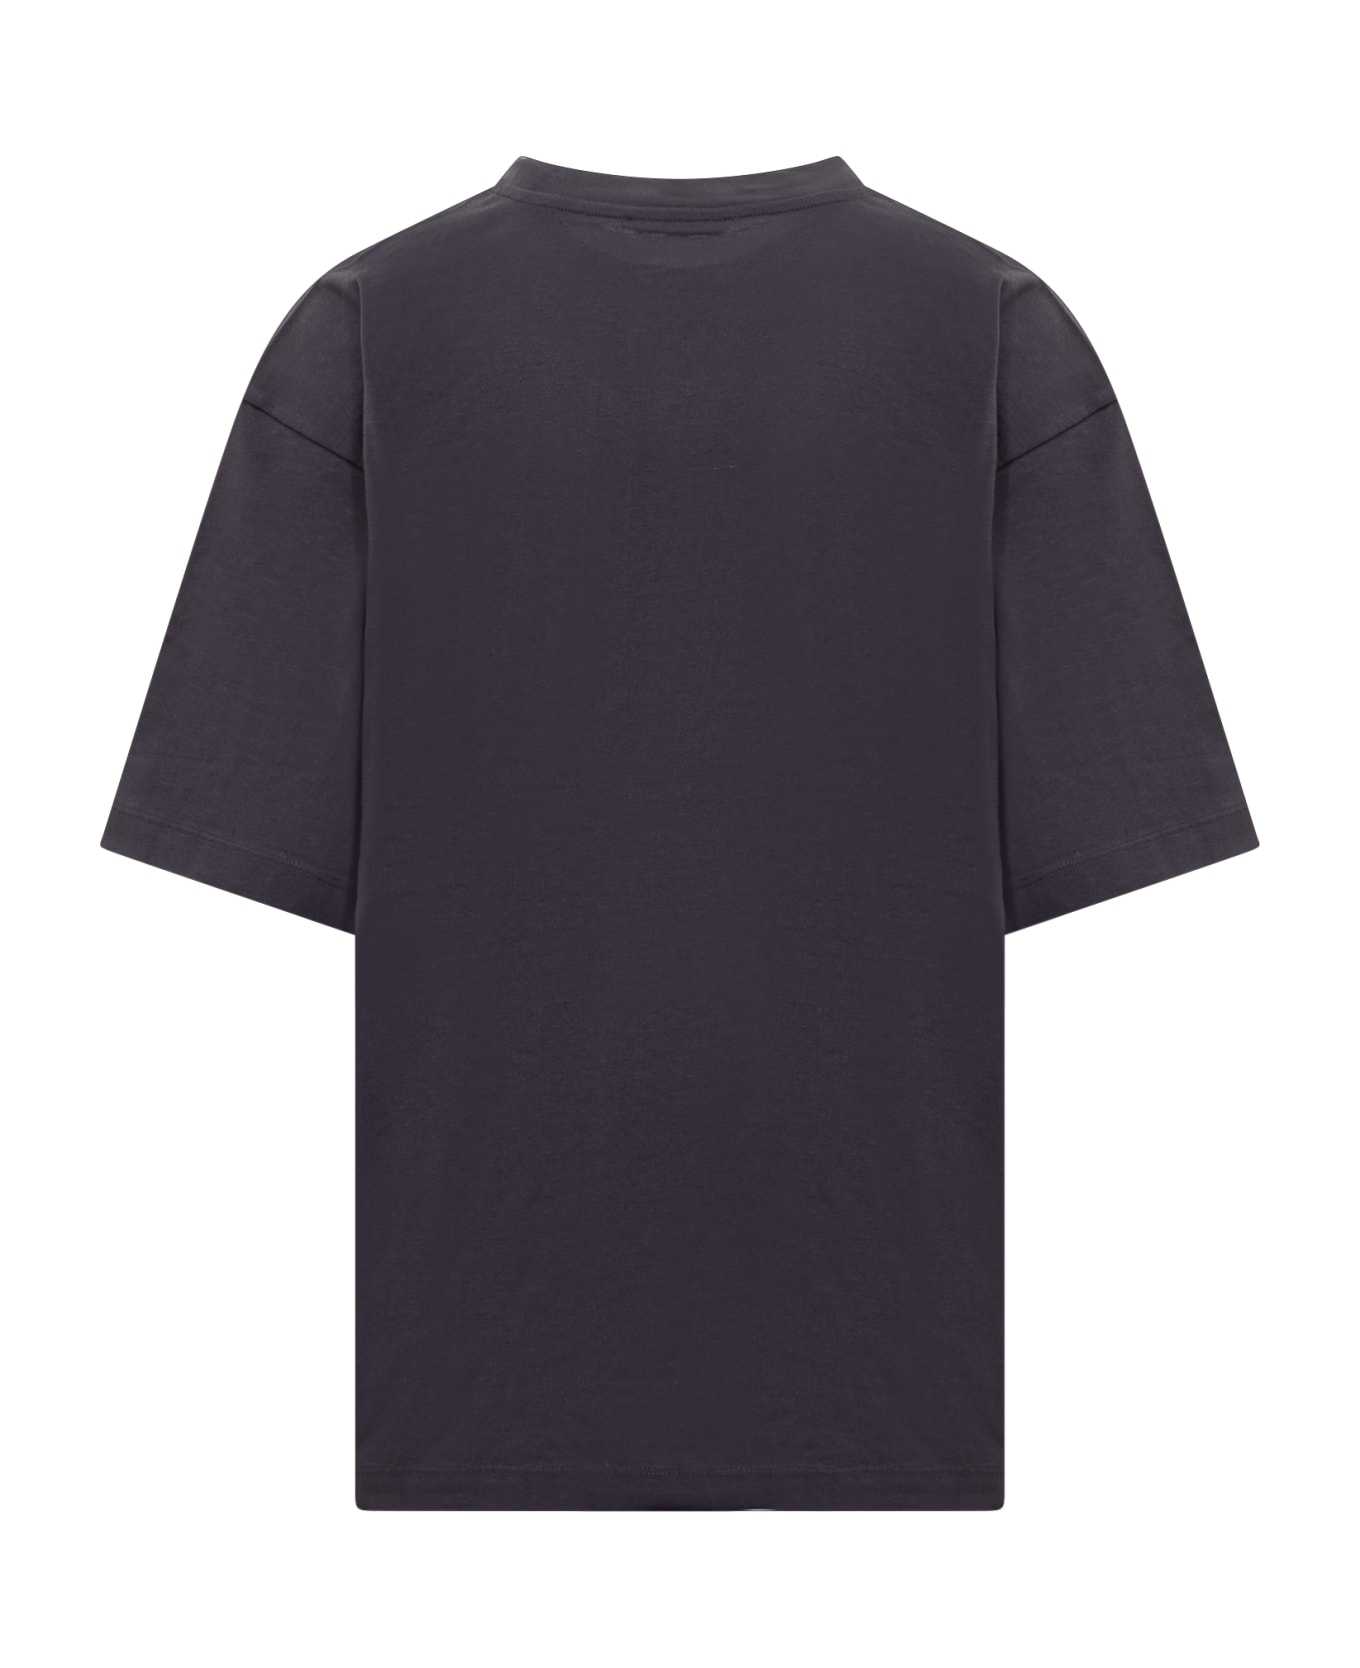 Marni T-shirt - BLU BLACK Tシャツ